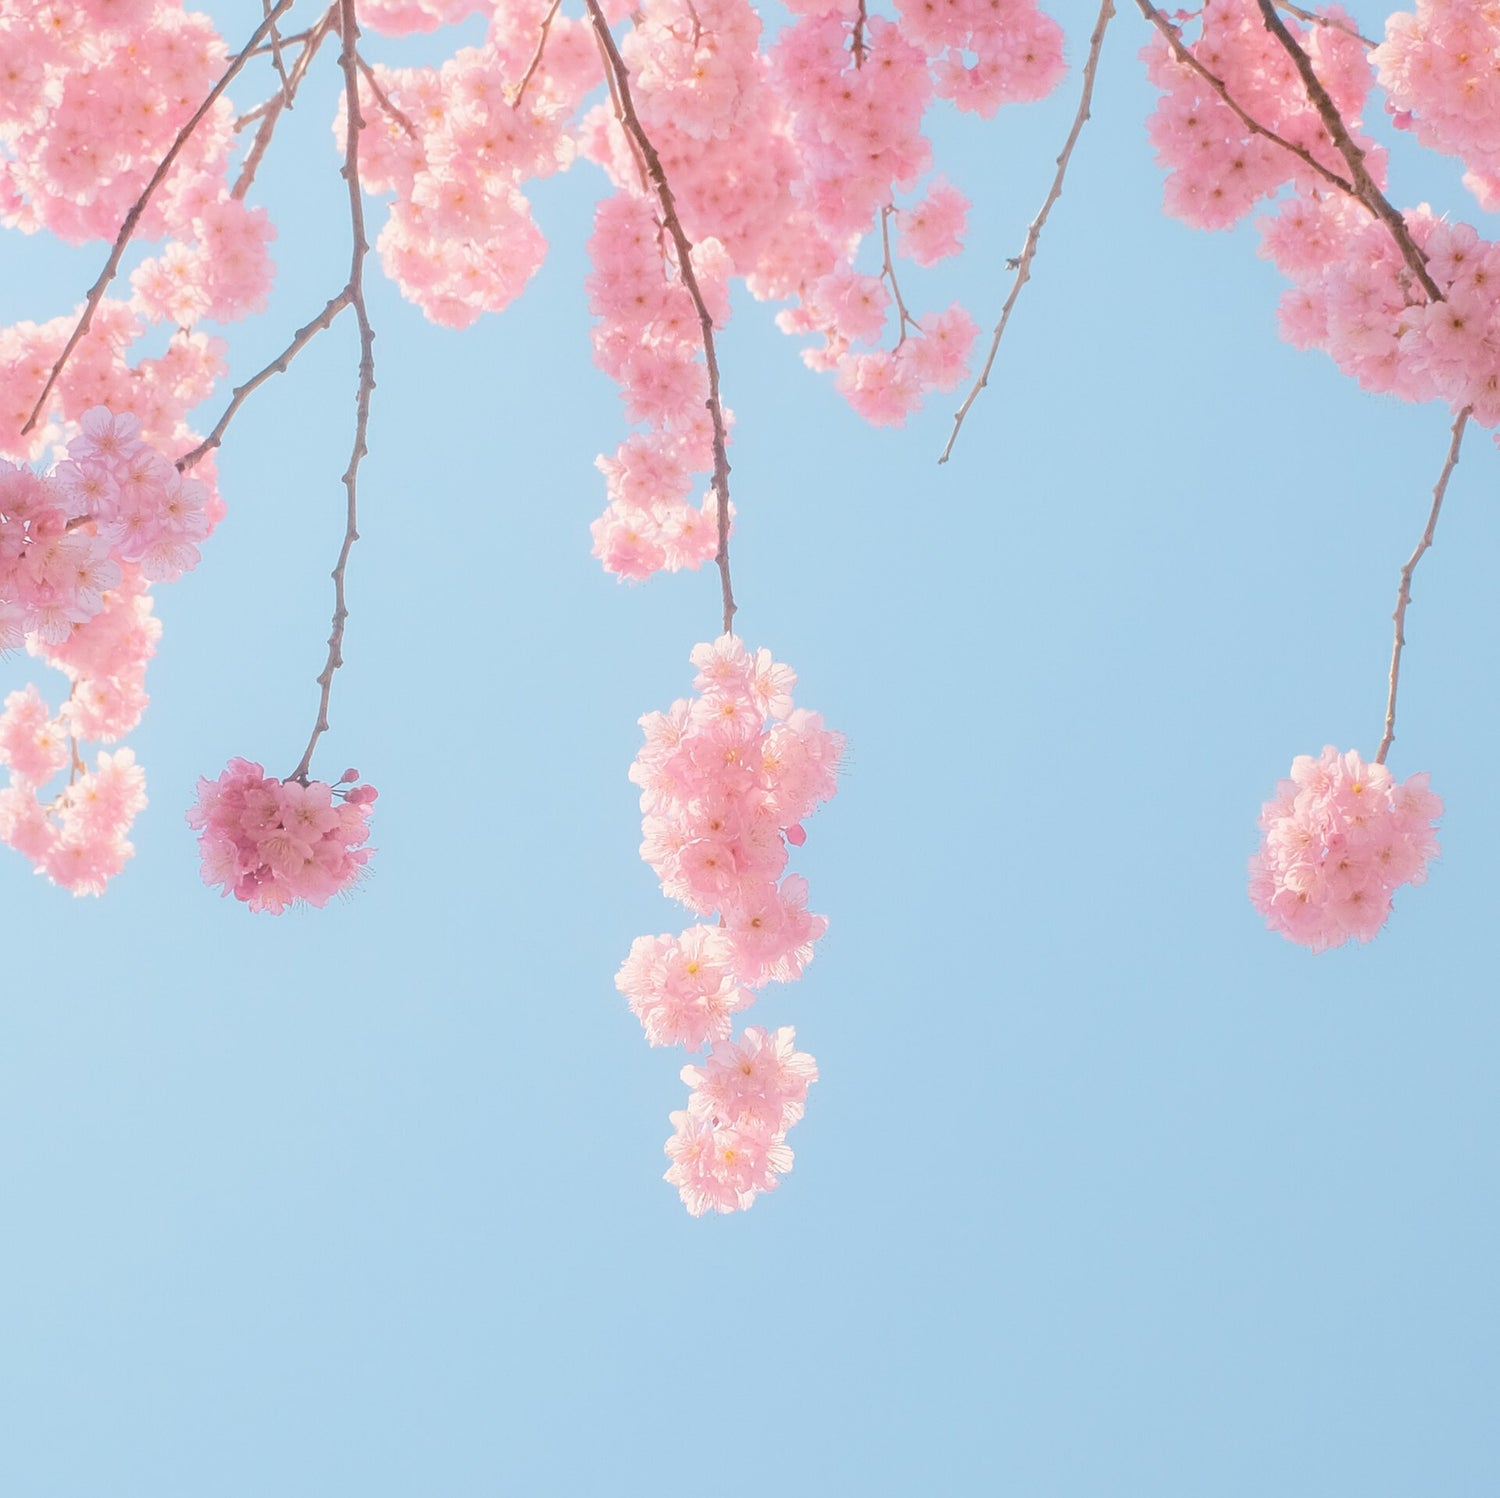 青い空を背景に満開の花が咲いた桜の枝が画面上から下にむかってのびている様子がうつっています。下記は関連するキーワードになります。春のお祝いギフト ギフト特集 春ギフト 新生活応援 和紙タオル 上質 機能的 新社会人 ハンカチ 異動 昇進 配りもの ご挨拶ギフト リピーターさん多数 和紙靴下 ムレない 紙布雑貨 ポーチ トートバッグ 名刺入れ カードケース 松久永助紙店 オンラインショップ